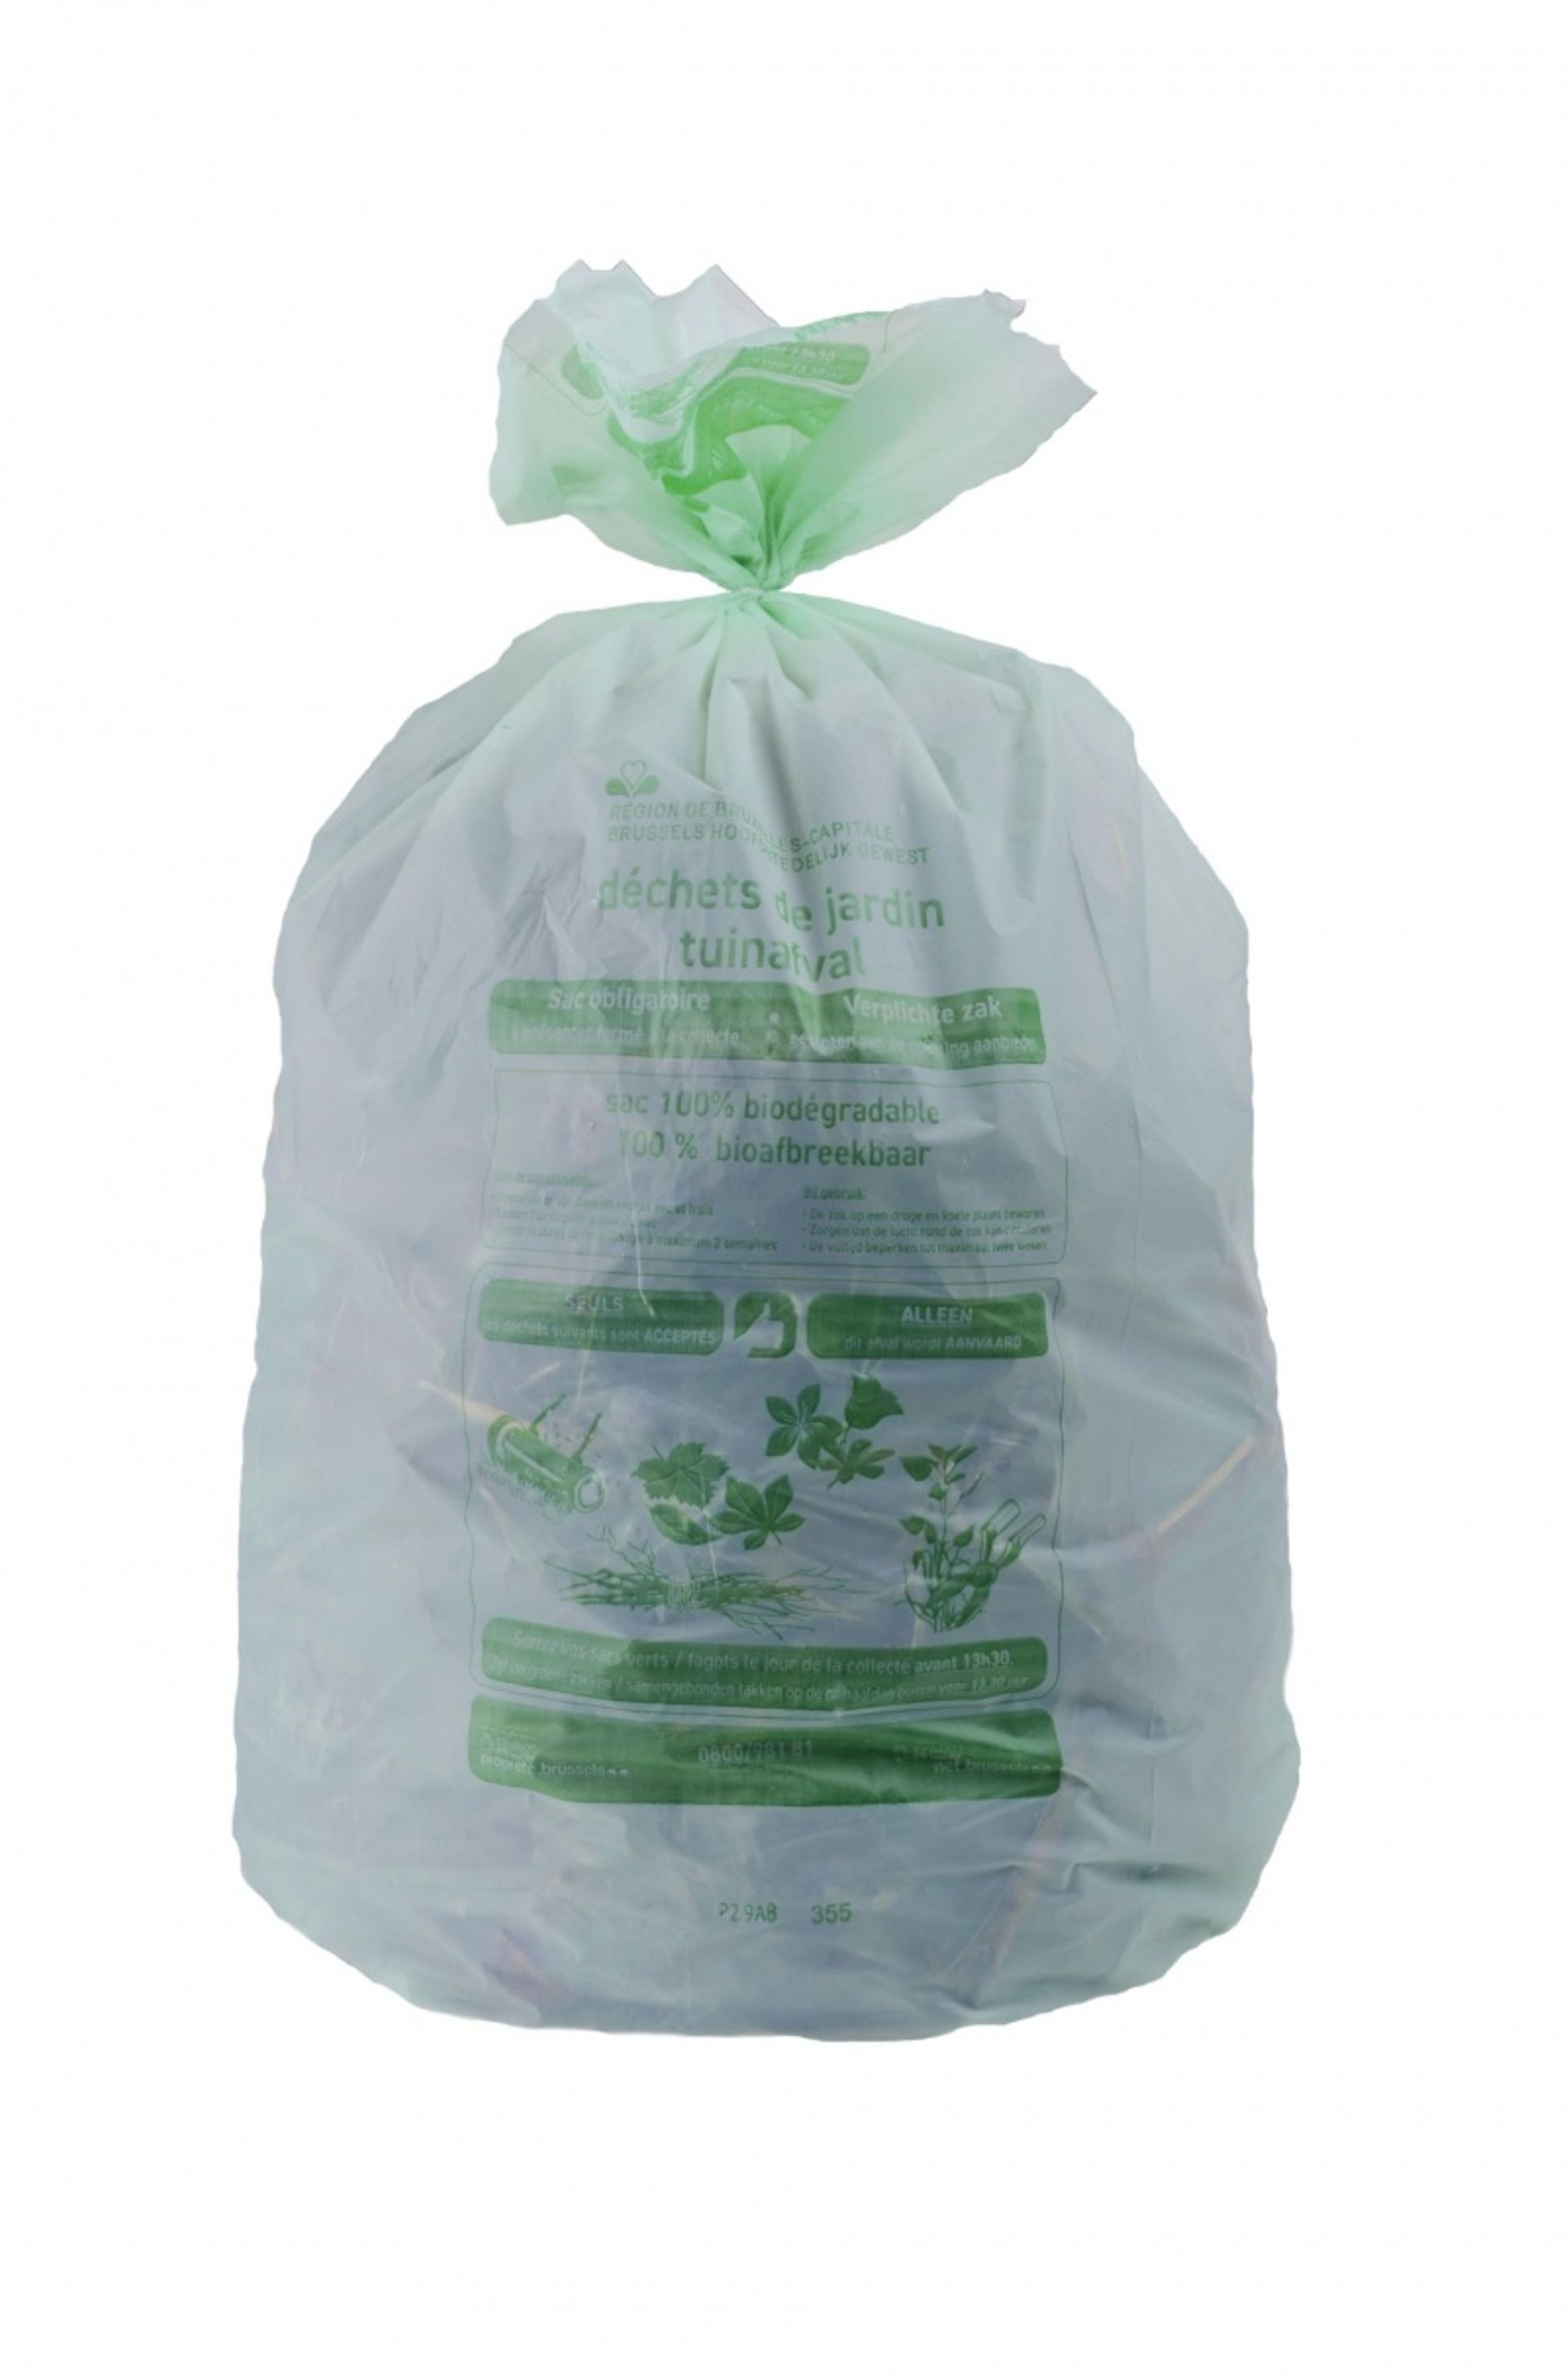 Les sacs verts biodégradables de Bruxelles-Propreté sont désormais